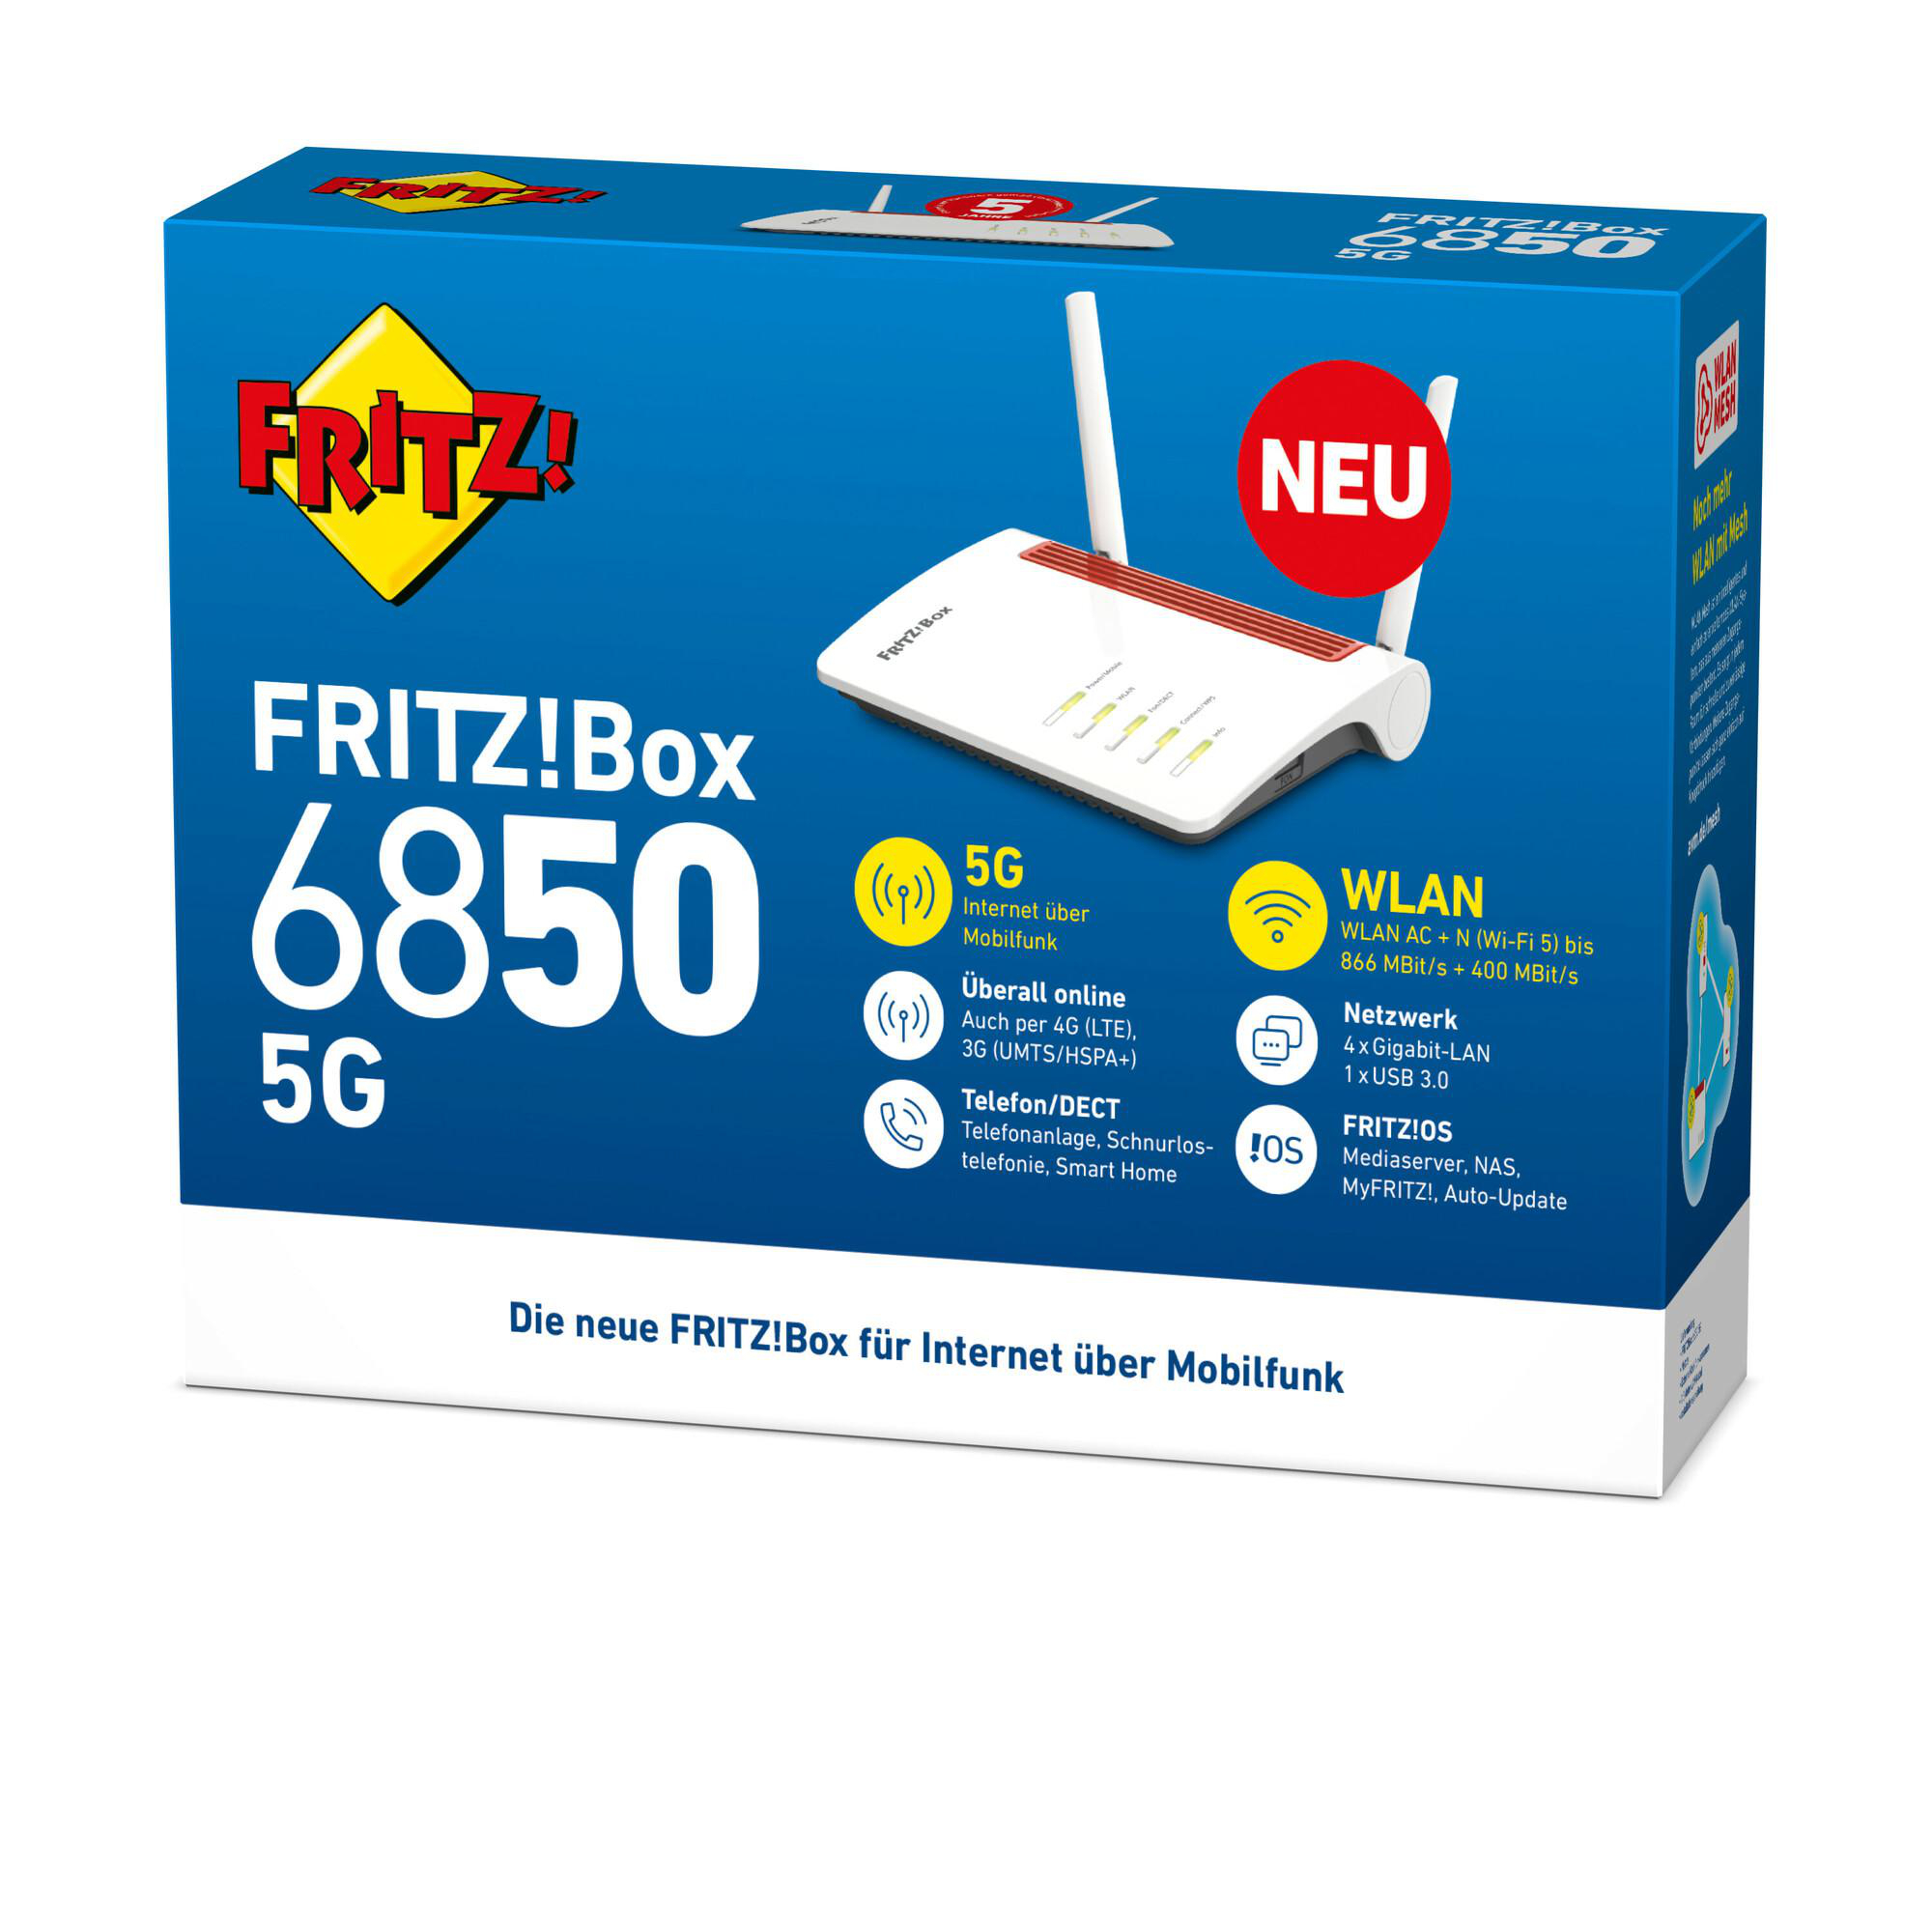 WLAN 6850 FRITZ!Box AVM 5G Mbit/s Router 1266